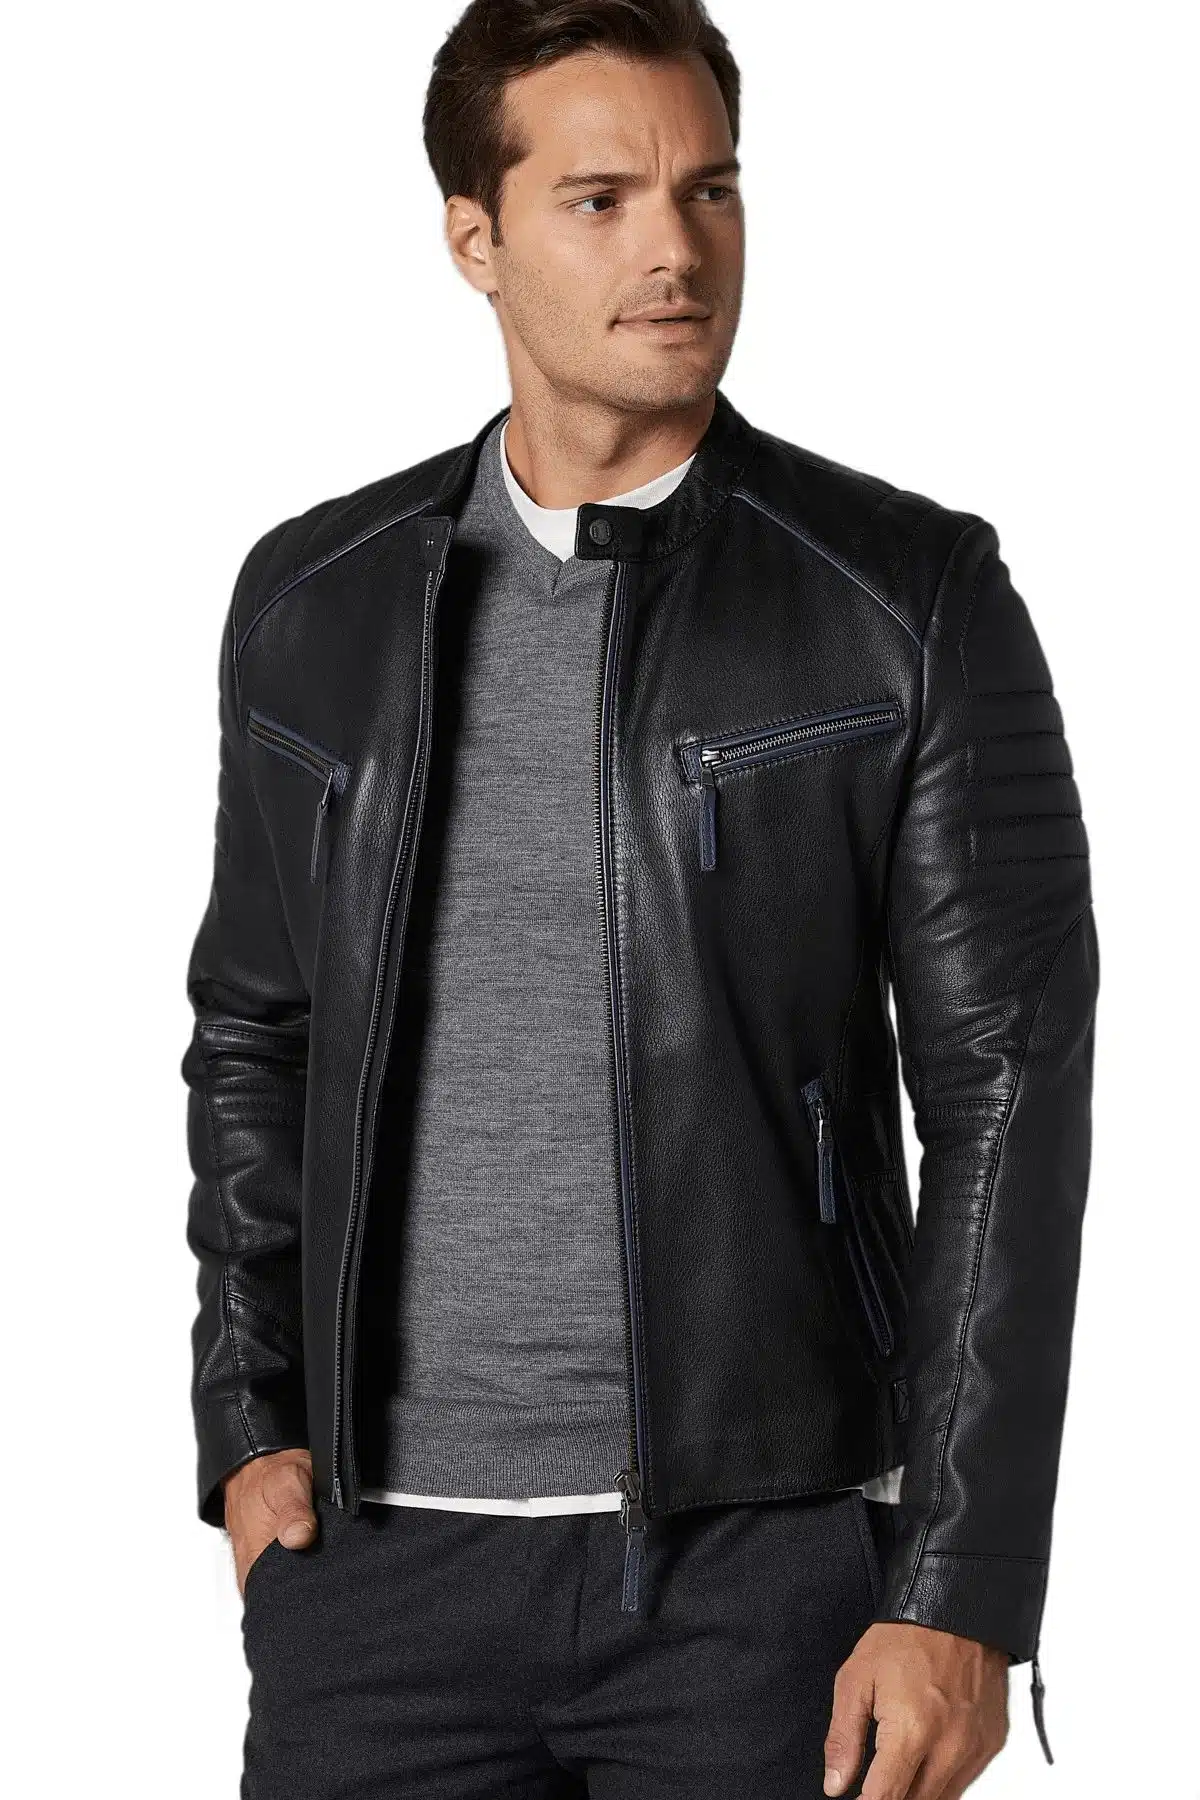 Lucas Men’s Lambskin Leather Jacket in Black (4)_result